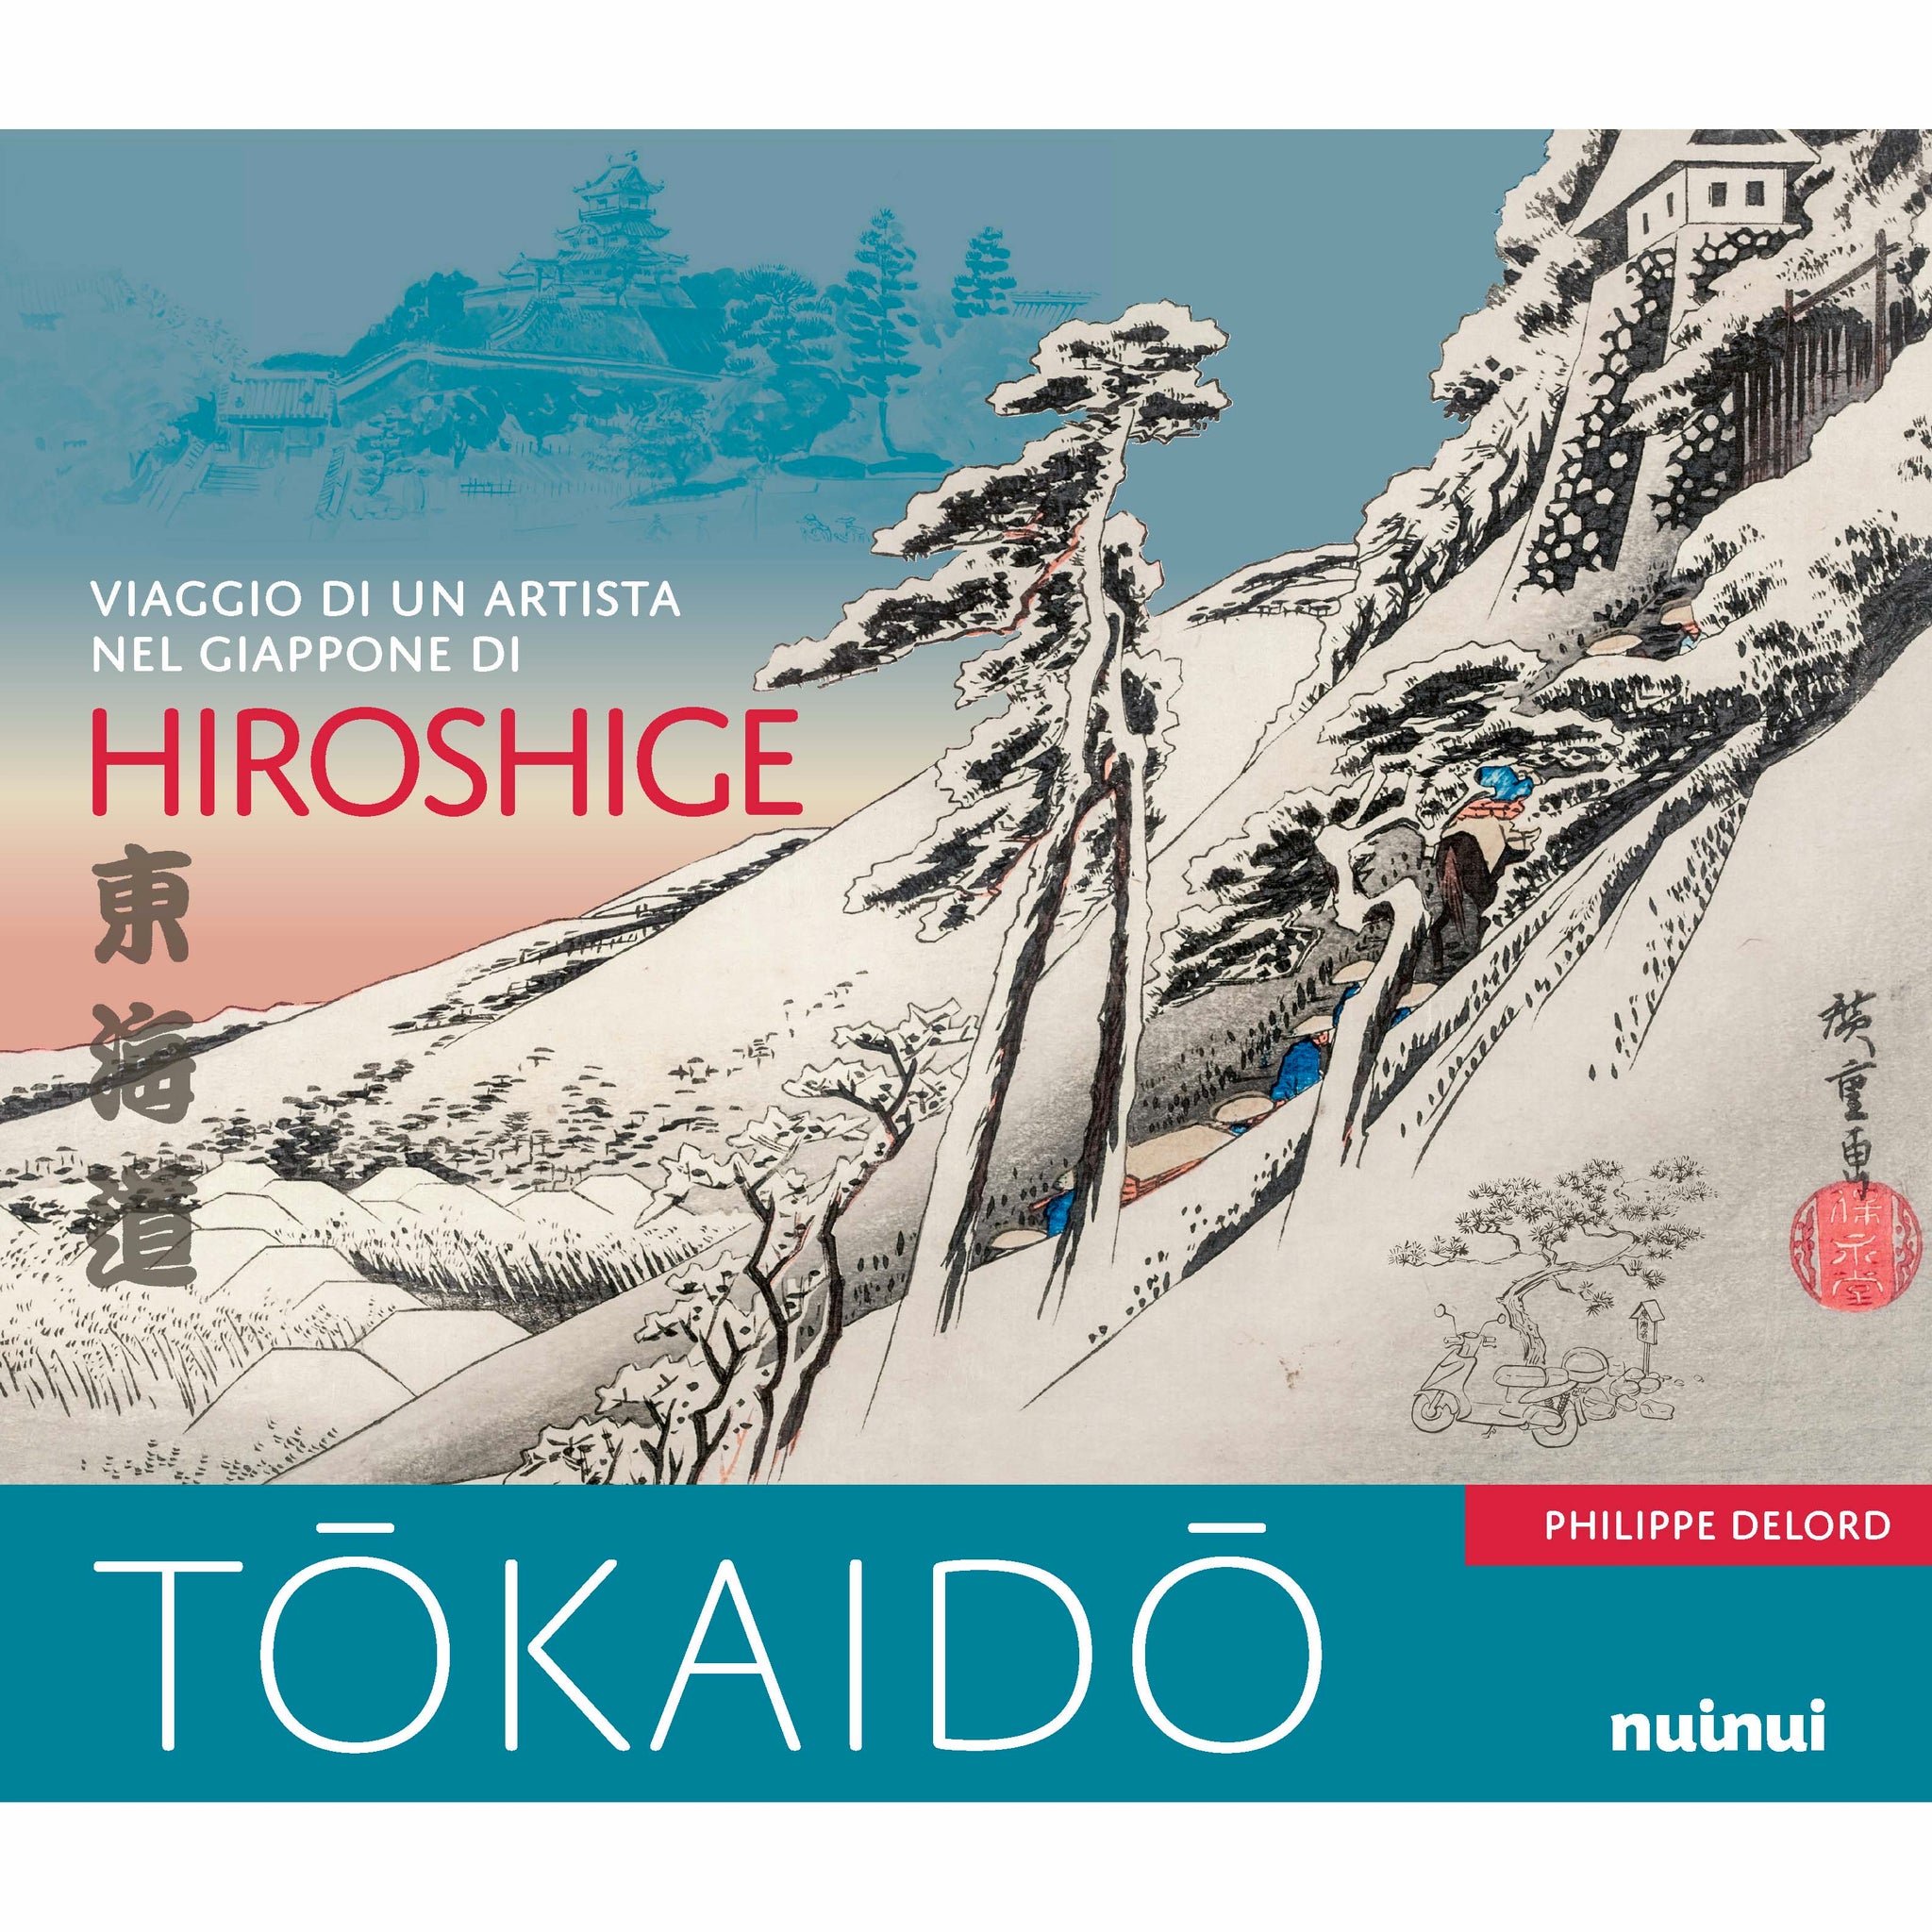 Tōkaidō - Viaggio di un artista nel Giappone di Hiroshige